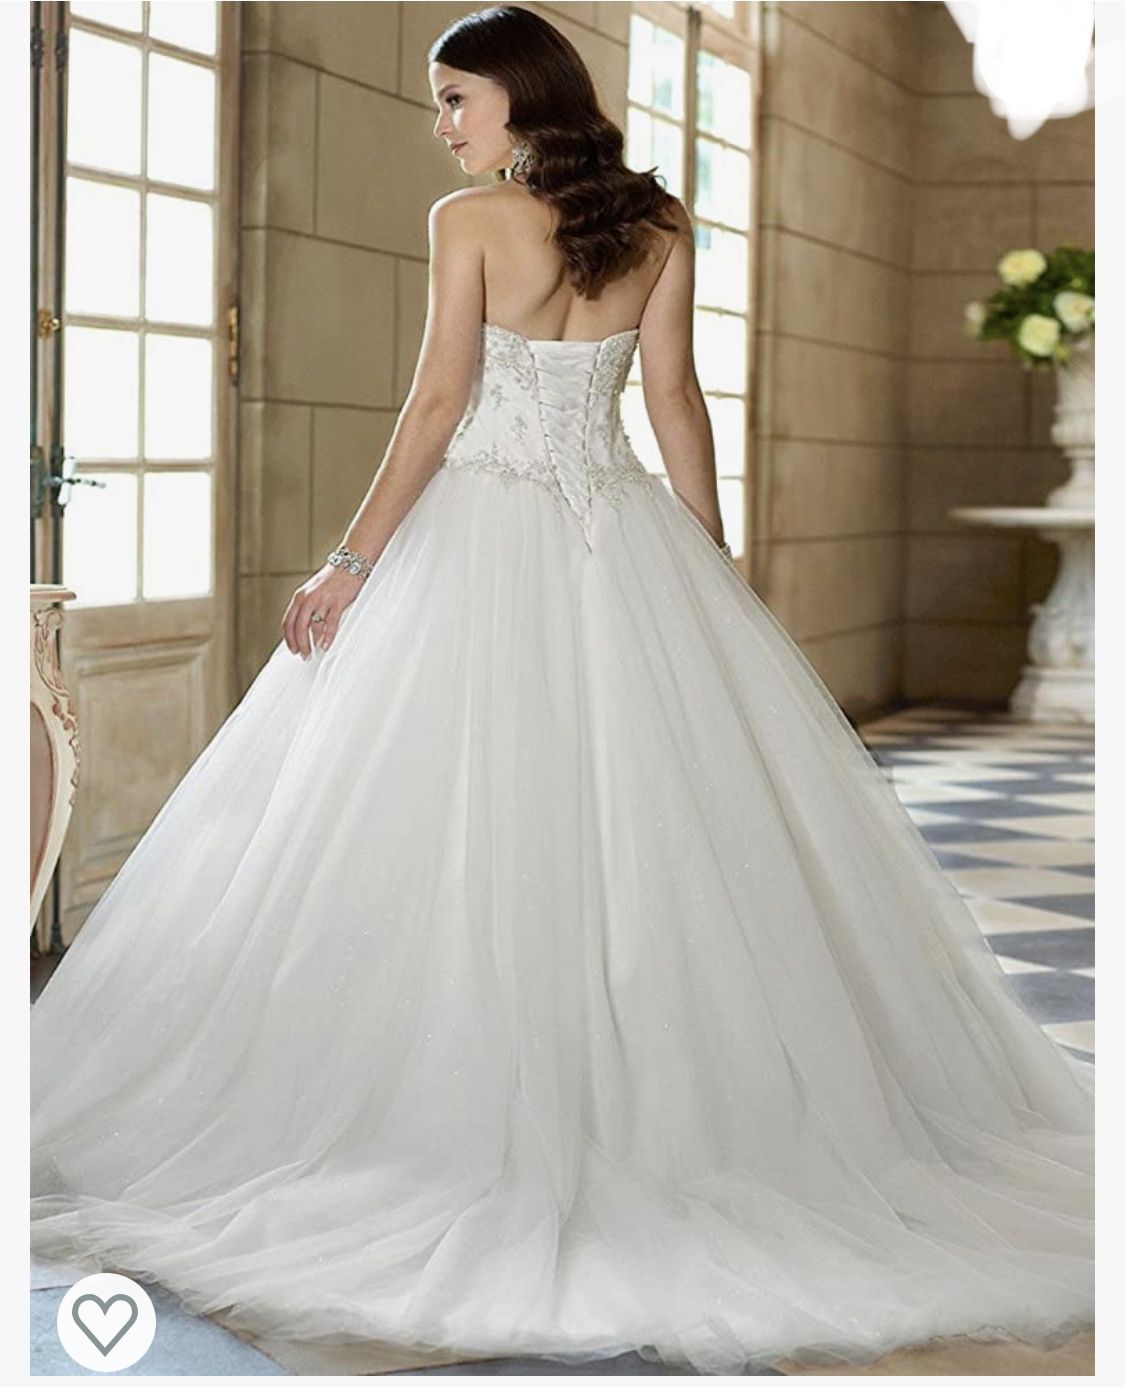 YIPEISHA Sweetheart Beaded Corset Bodice Classic Tulle Wedding Dress